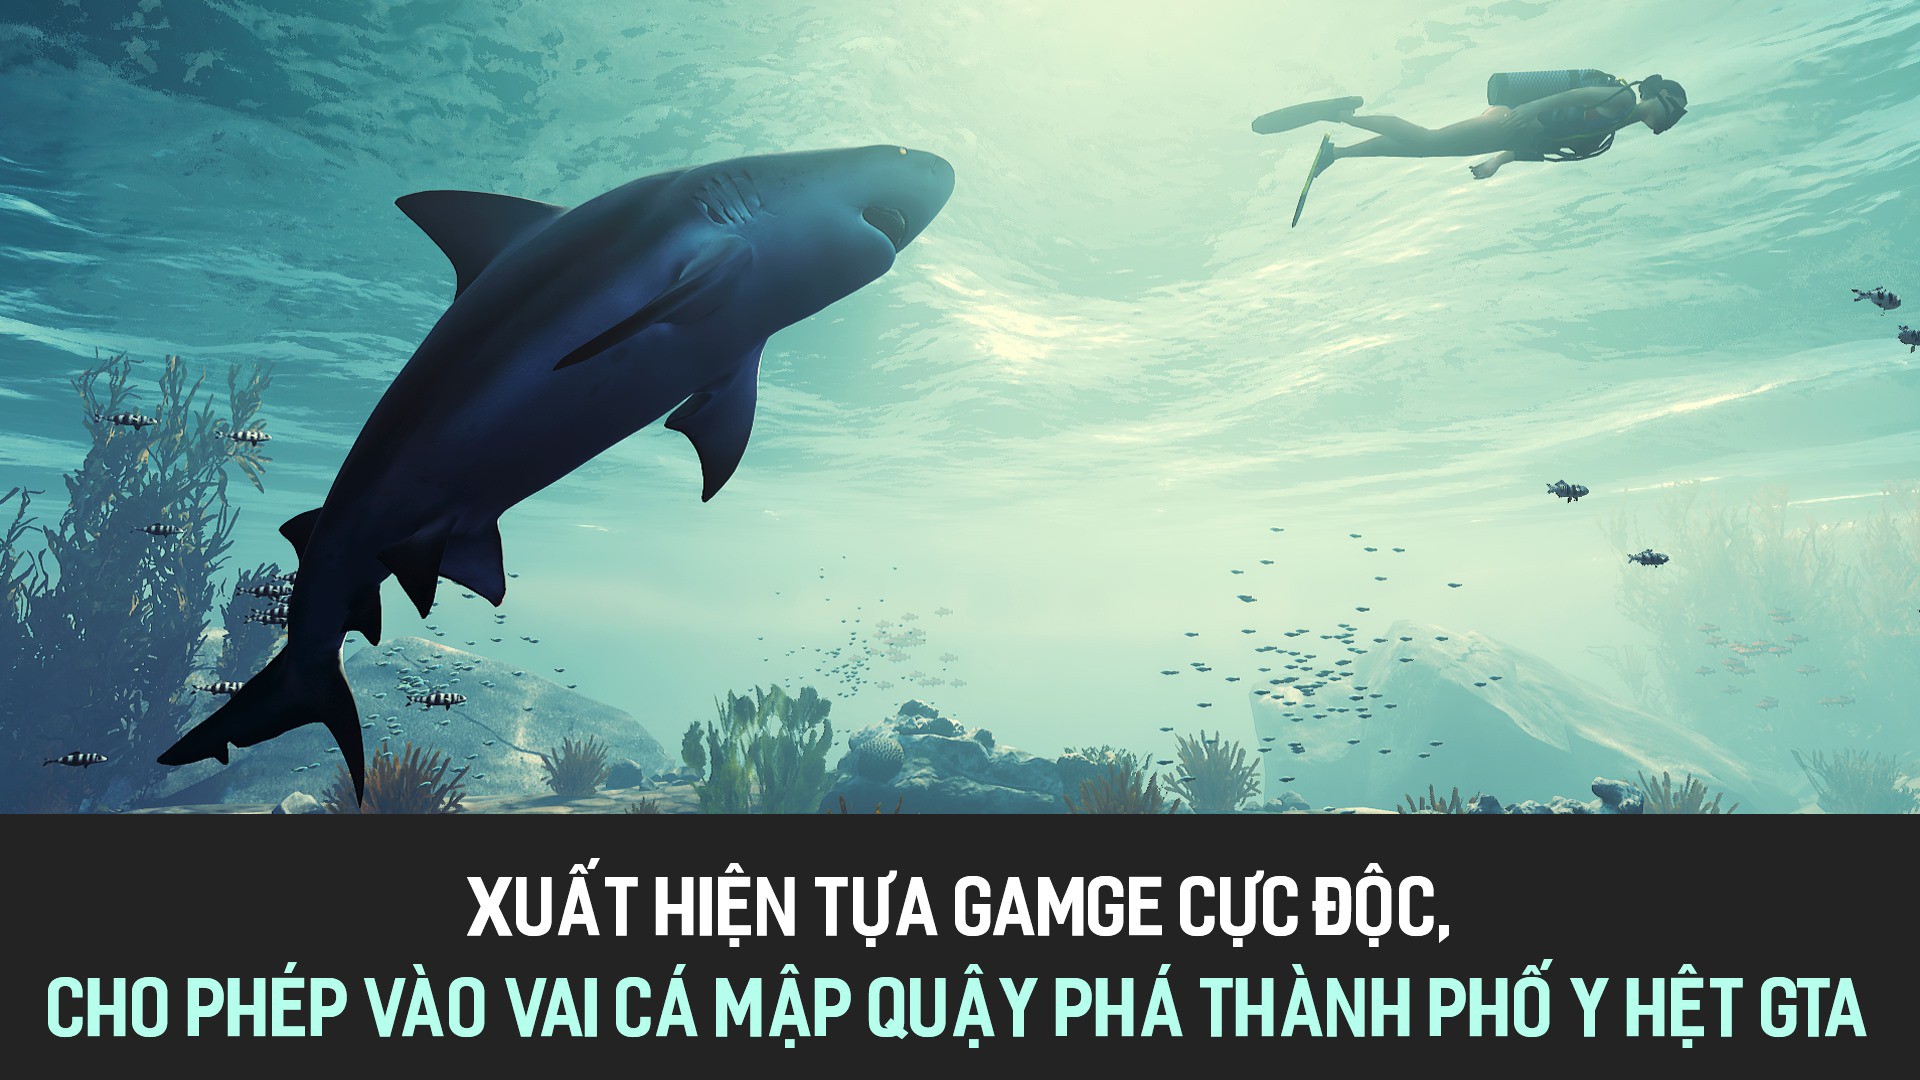 Xuất hiện tựa gamge cực độc, cho phép vào vai cá mập quậy phá thành phố y hệt GTA